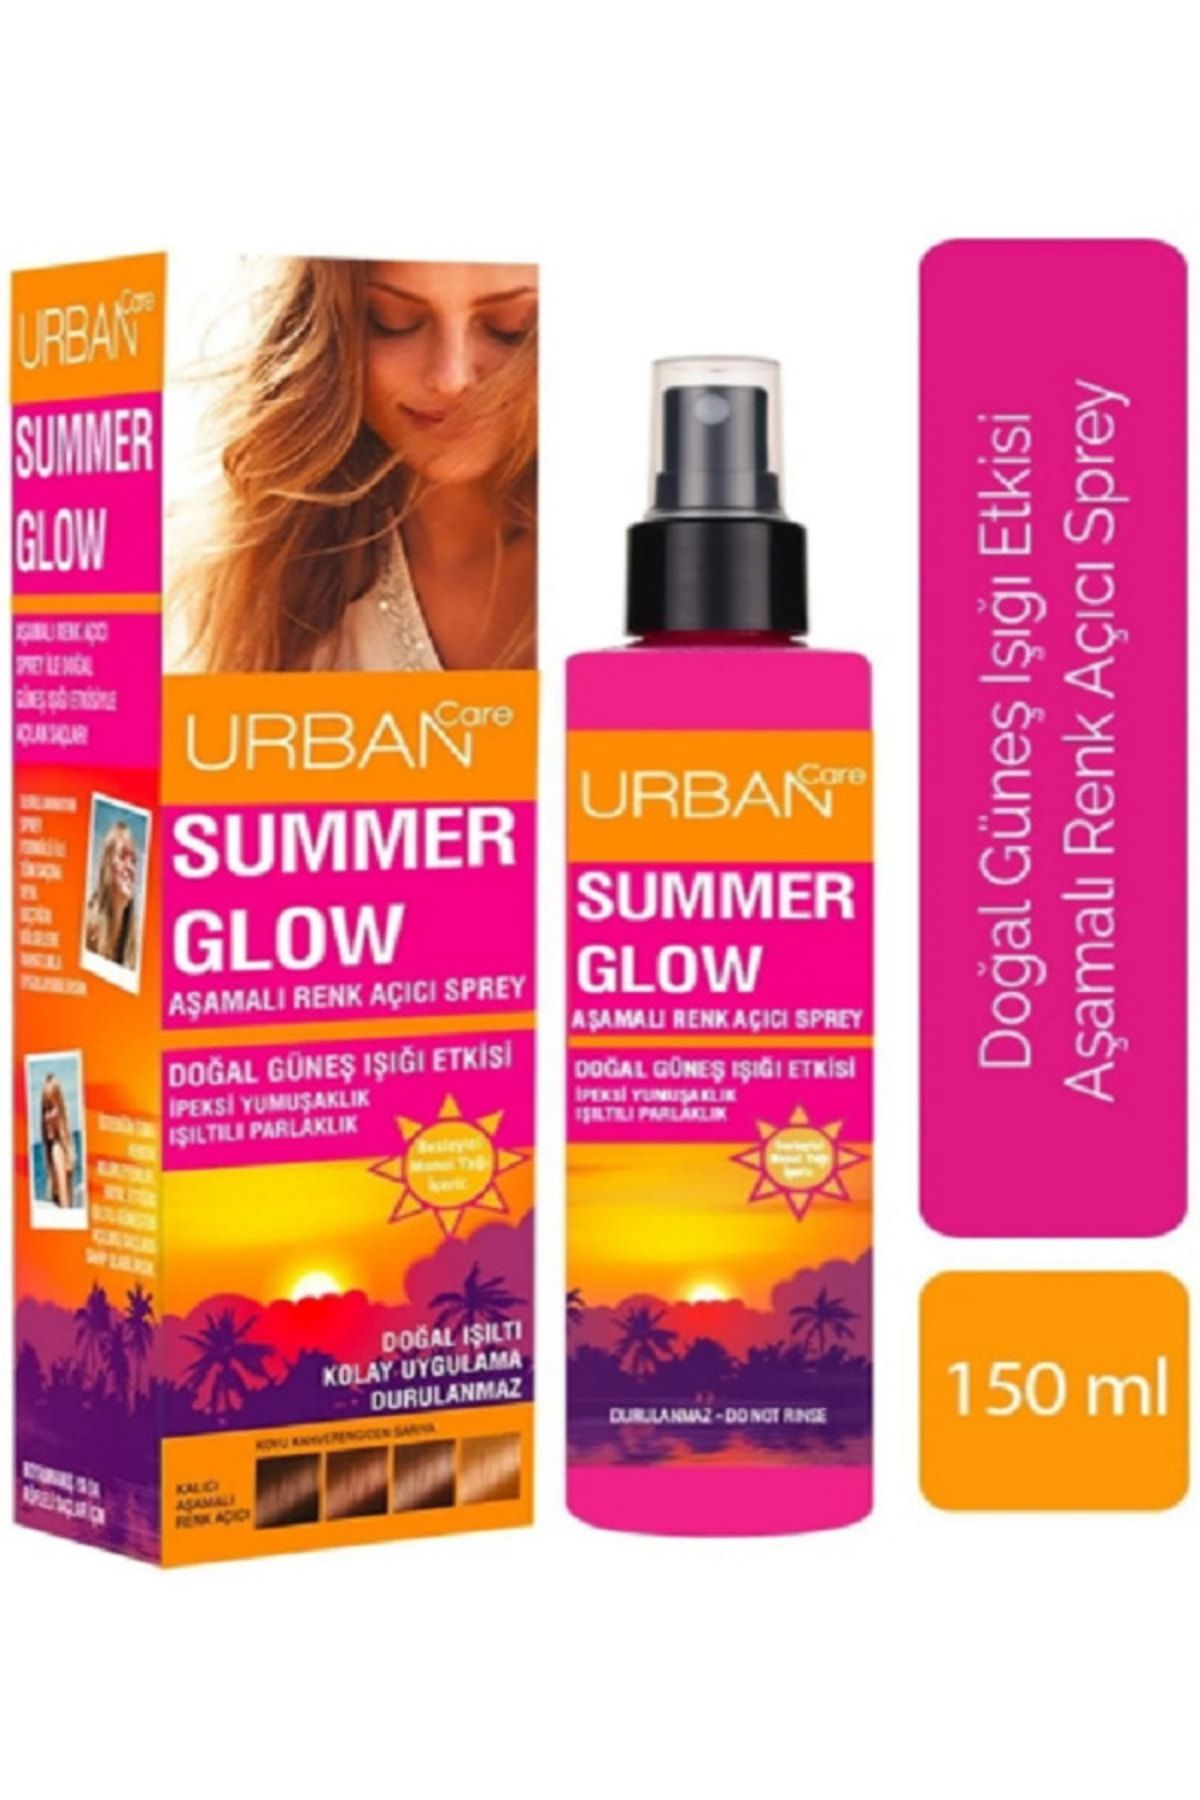 Urban Care Summer Glow Süper Aşamalı Renk Açıcı Sprey 150 Ml _urban-sprey-001